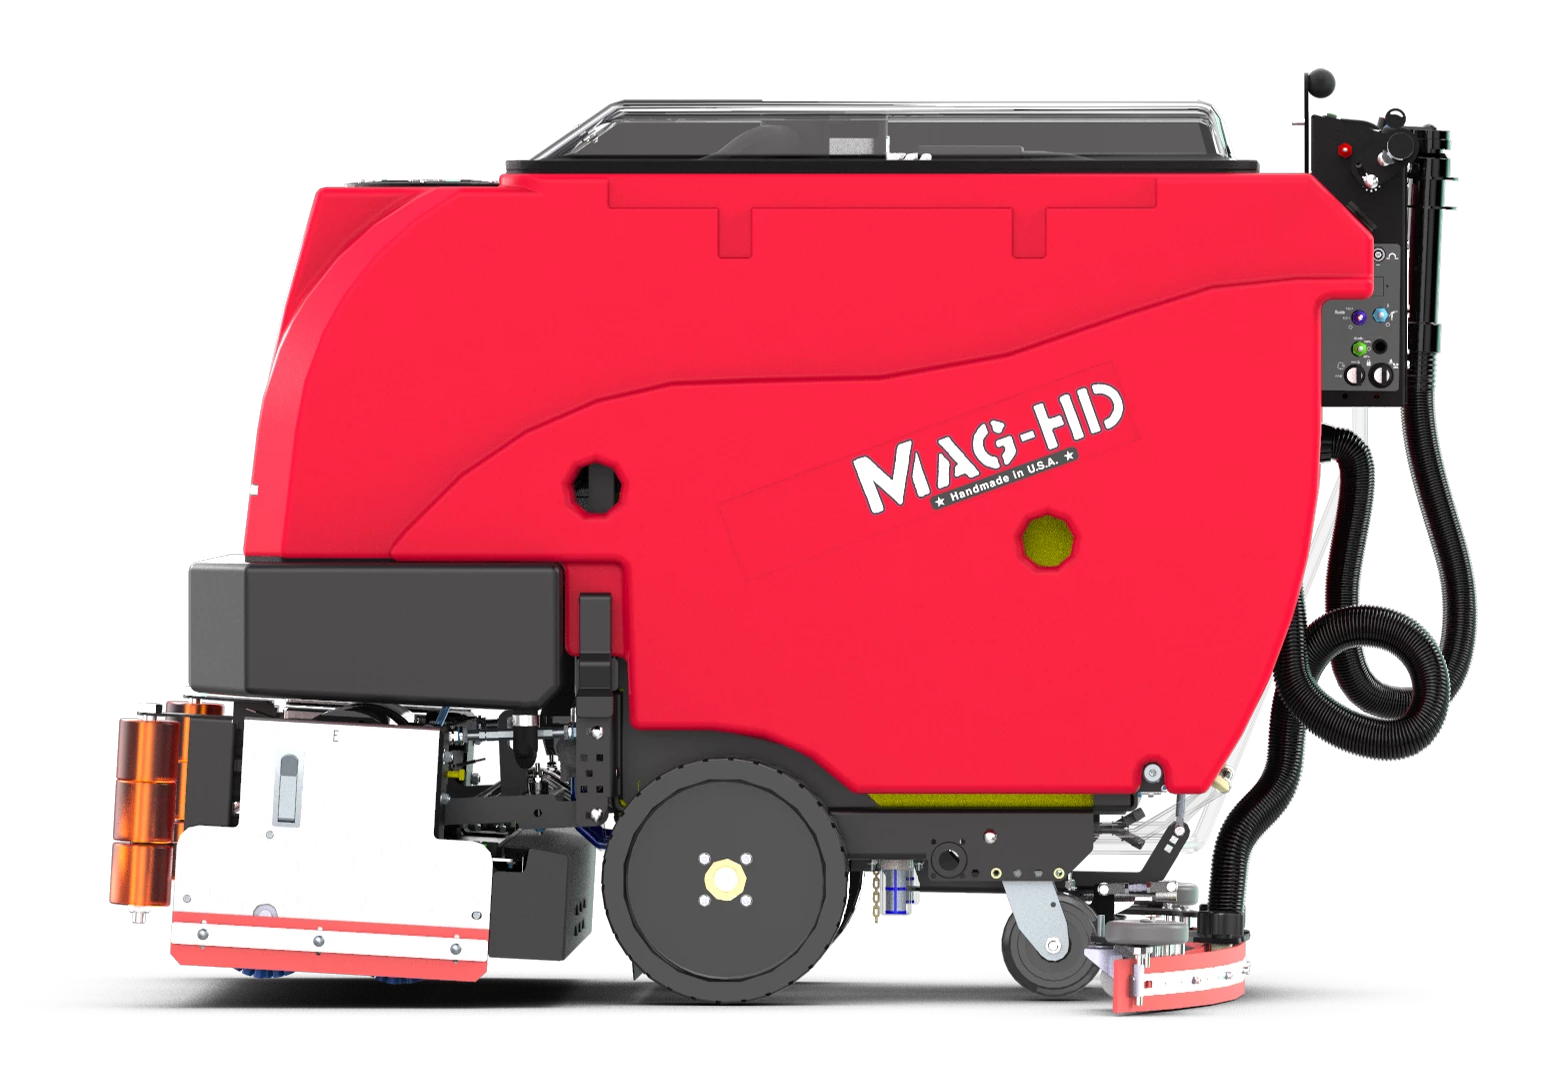 Ročno vodeni stroj za mokro čiščenje tal Factory Cat Mag HD 29C